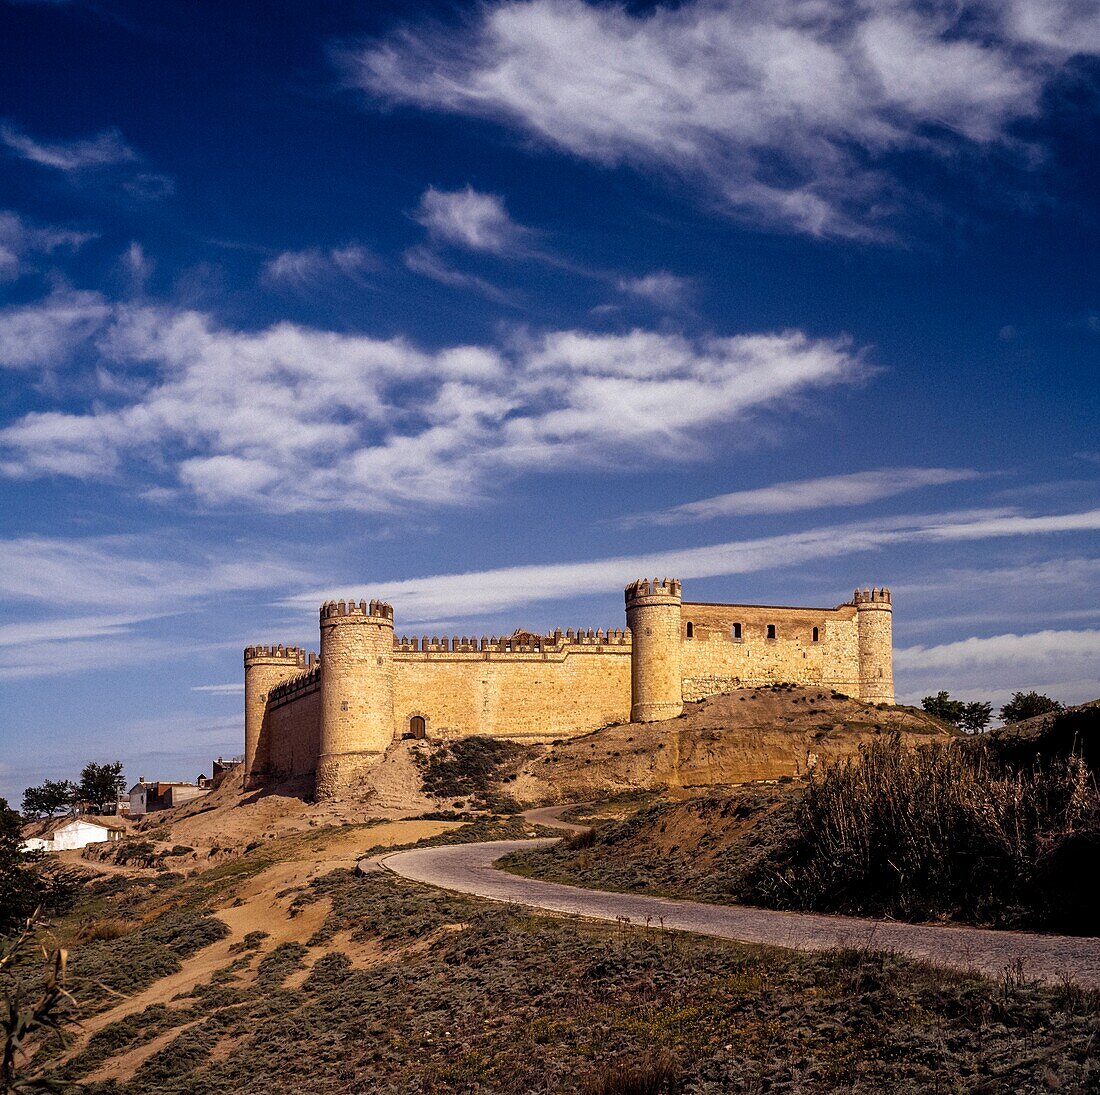 Das Schloss von Maqueda. (Toledo) Spanien. Maqueda liegt in der Comarca Torrijos. Die Stadt ist vor allem für ihre bemerkenswert gut erhaltene Burg, das Castillo de la Vela, bekannt.